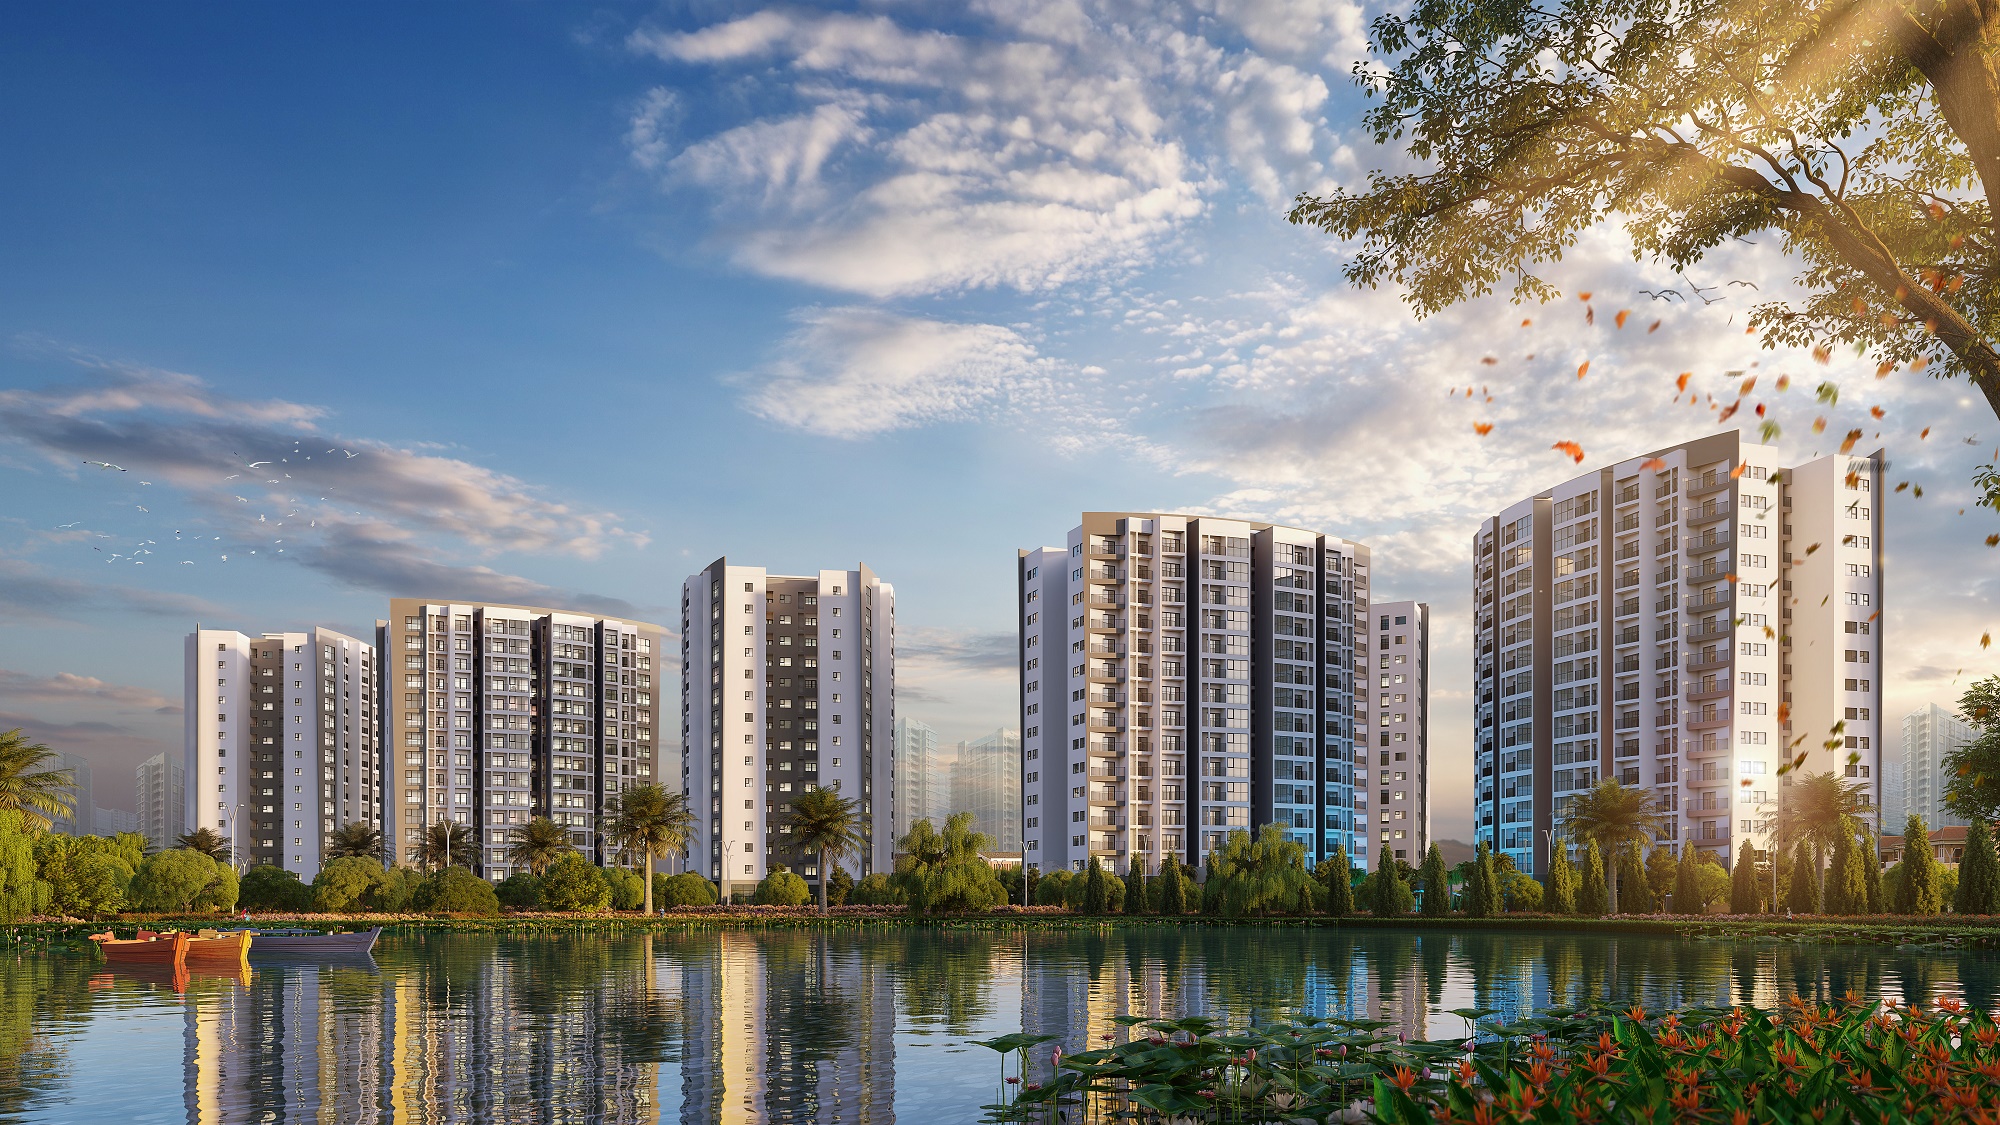 Tổ hợp chung cư cao cấp Le Grand Jardin với tầm nhìn bao trọn hồ Sài Đồng, sở hữu không gian sống thơ mộng ngay tại cửa ngõ phía Đông của Thủ đô